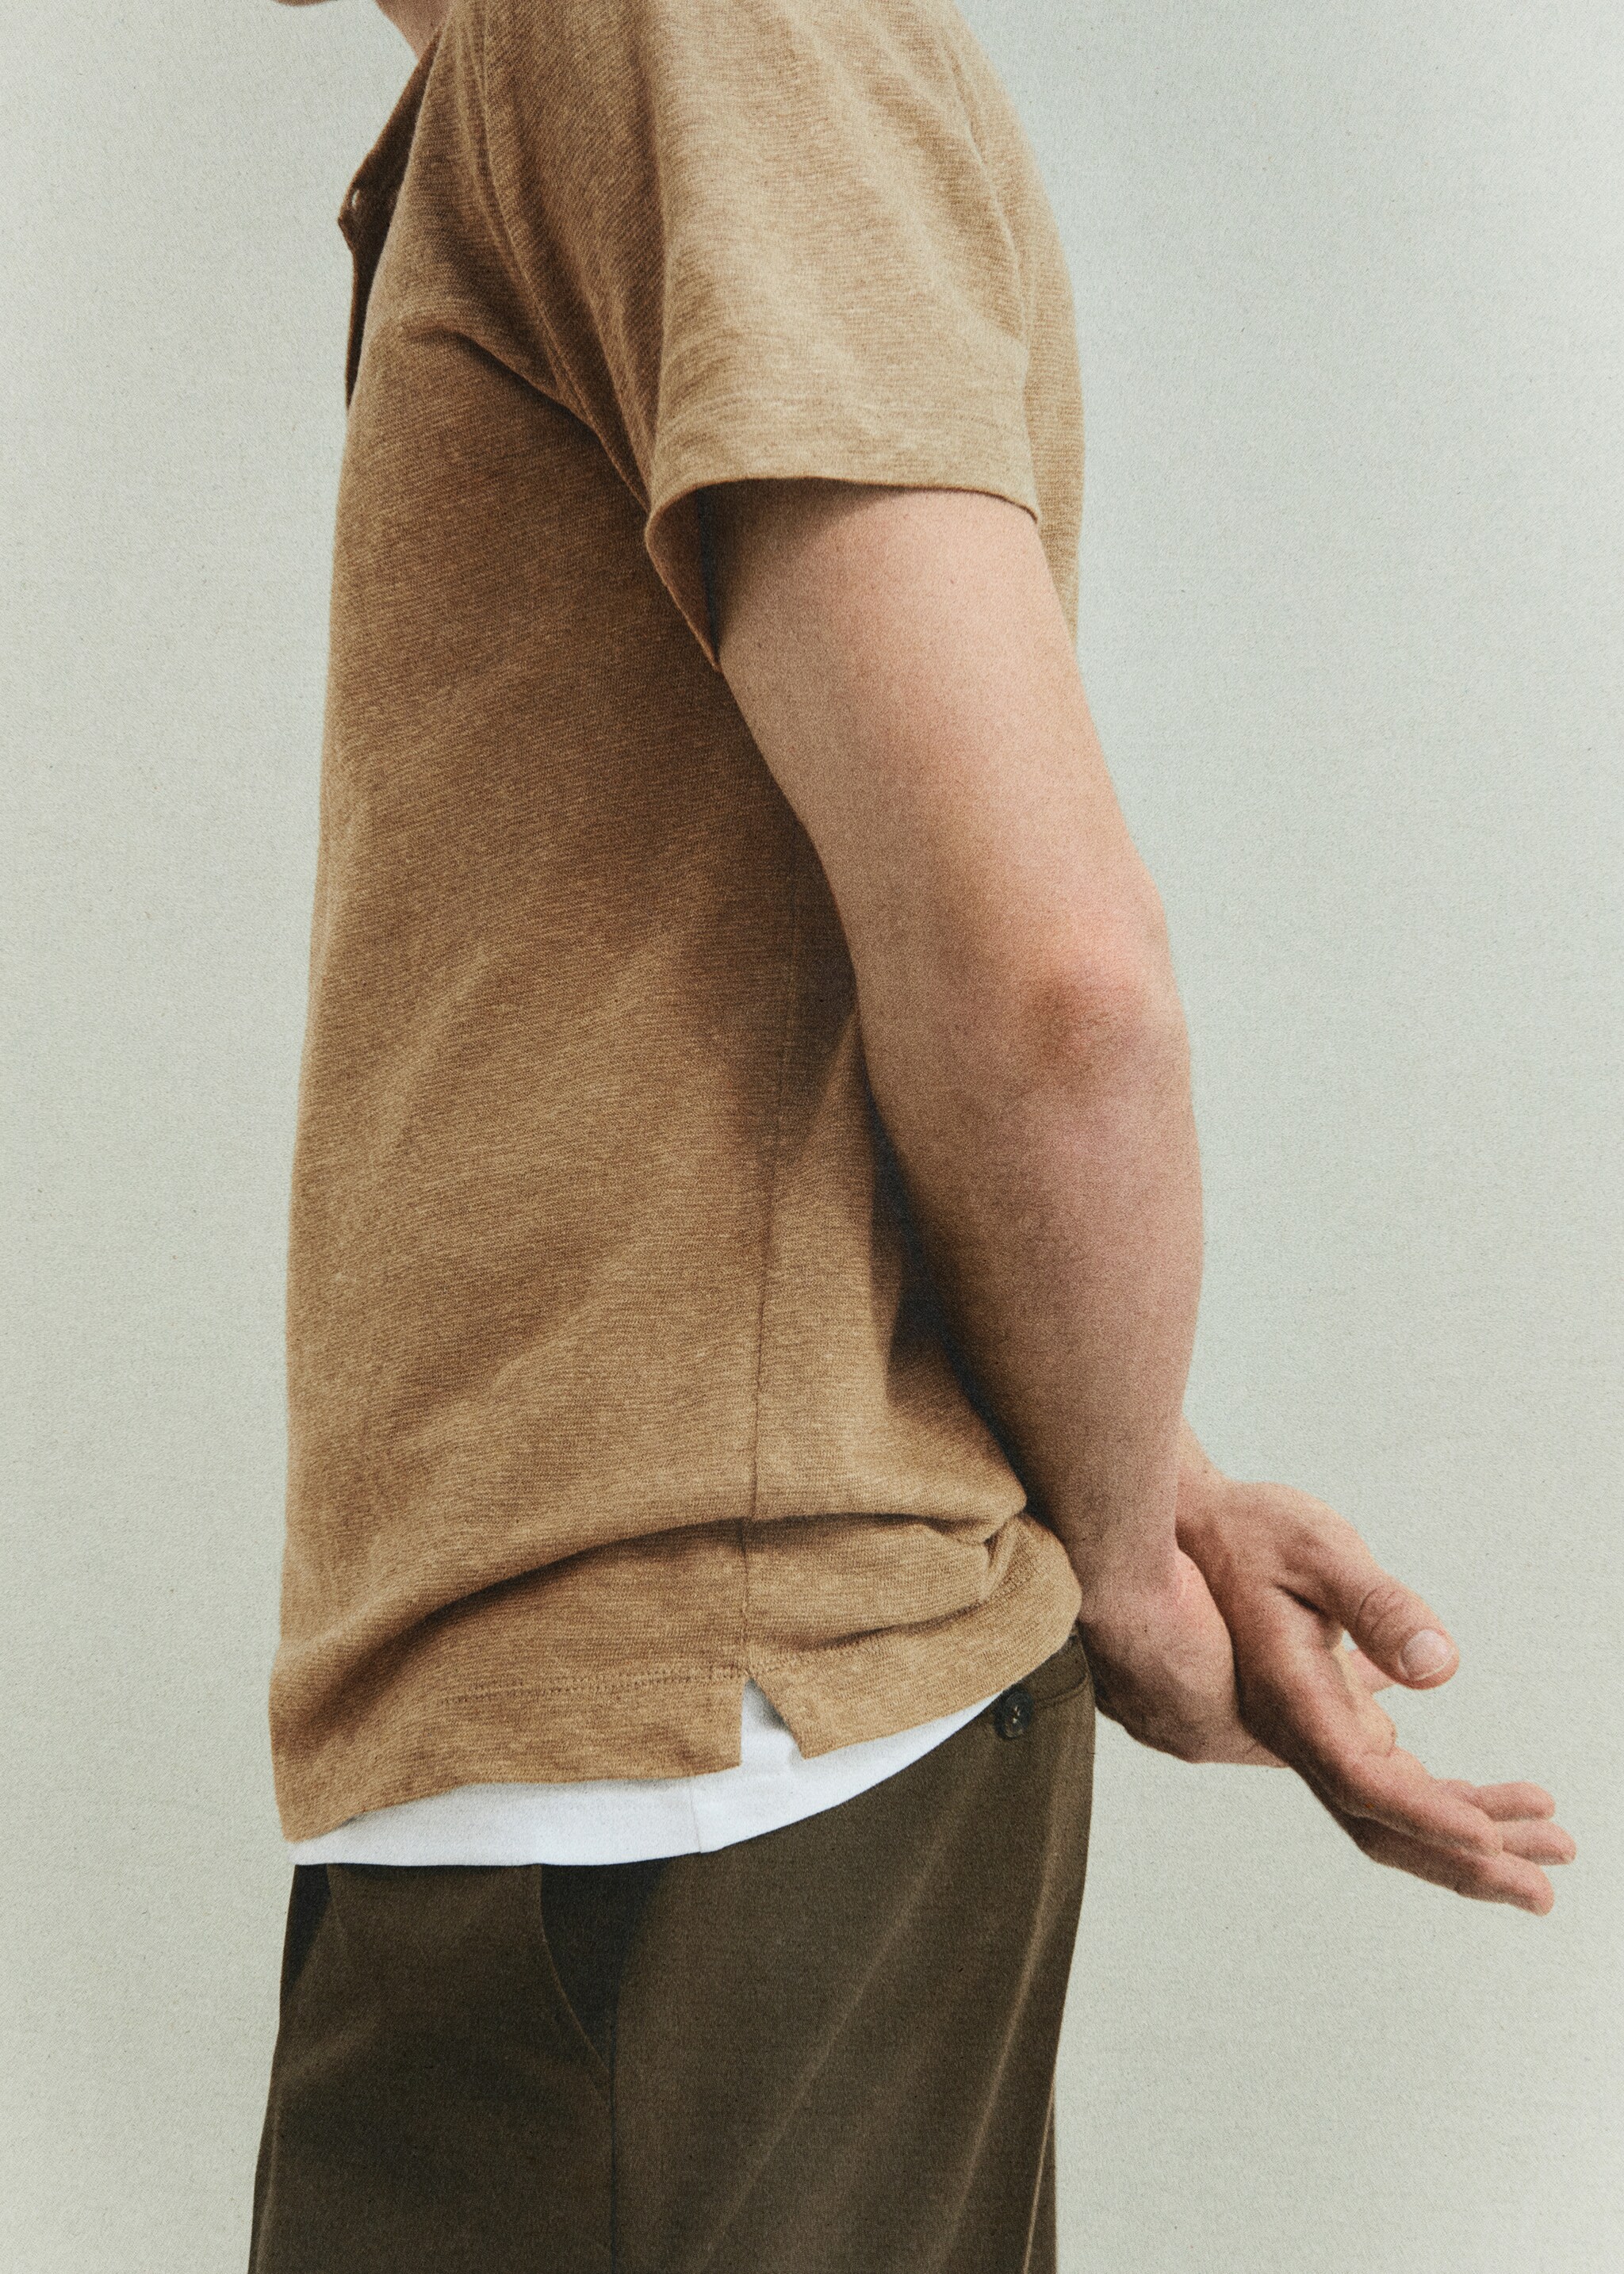 Camiseta slim fit 100% lino - Detalle del artículo 3